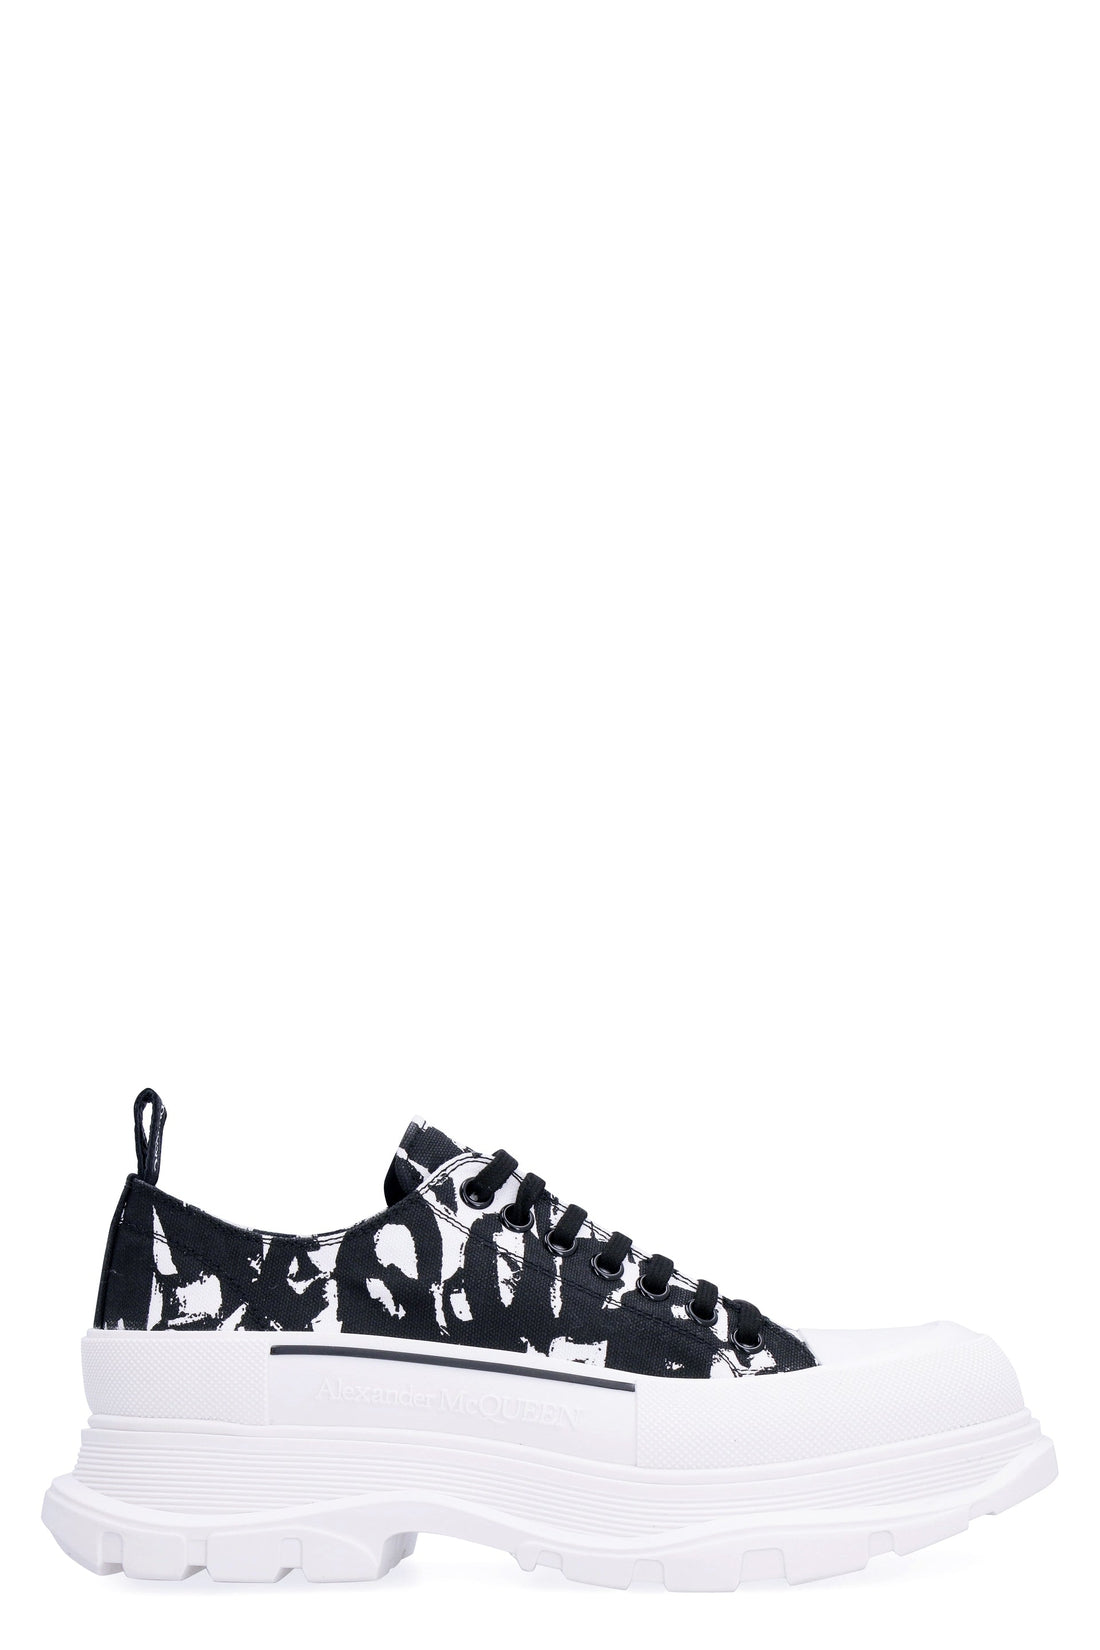 Alexander McQueen-OUTLET-SALE-Tread Slick lace-up shoes-ARCHIVIST